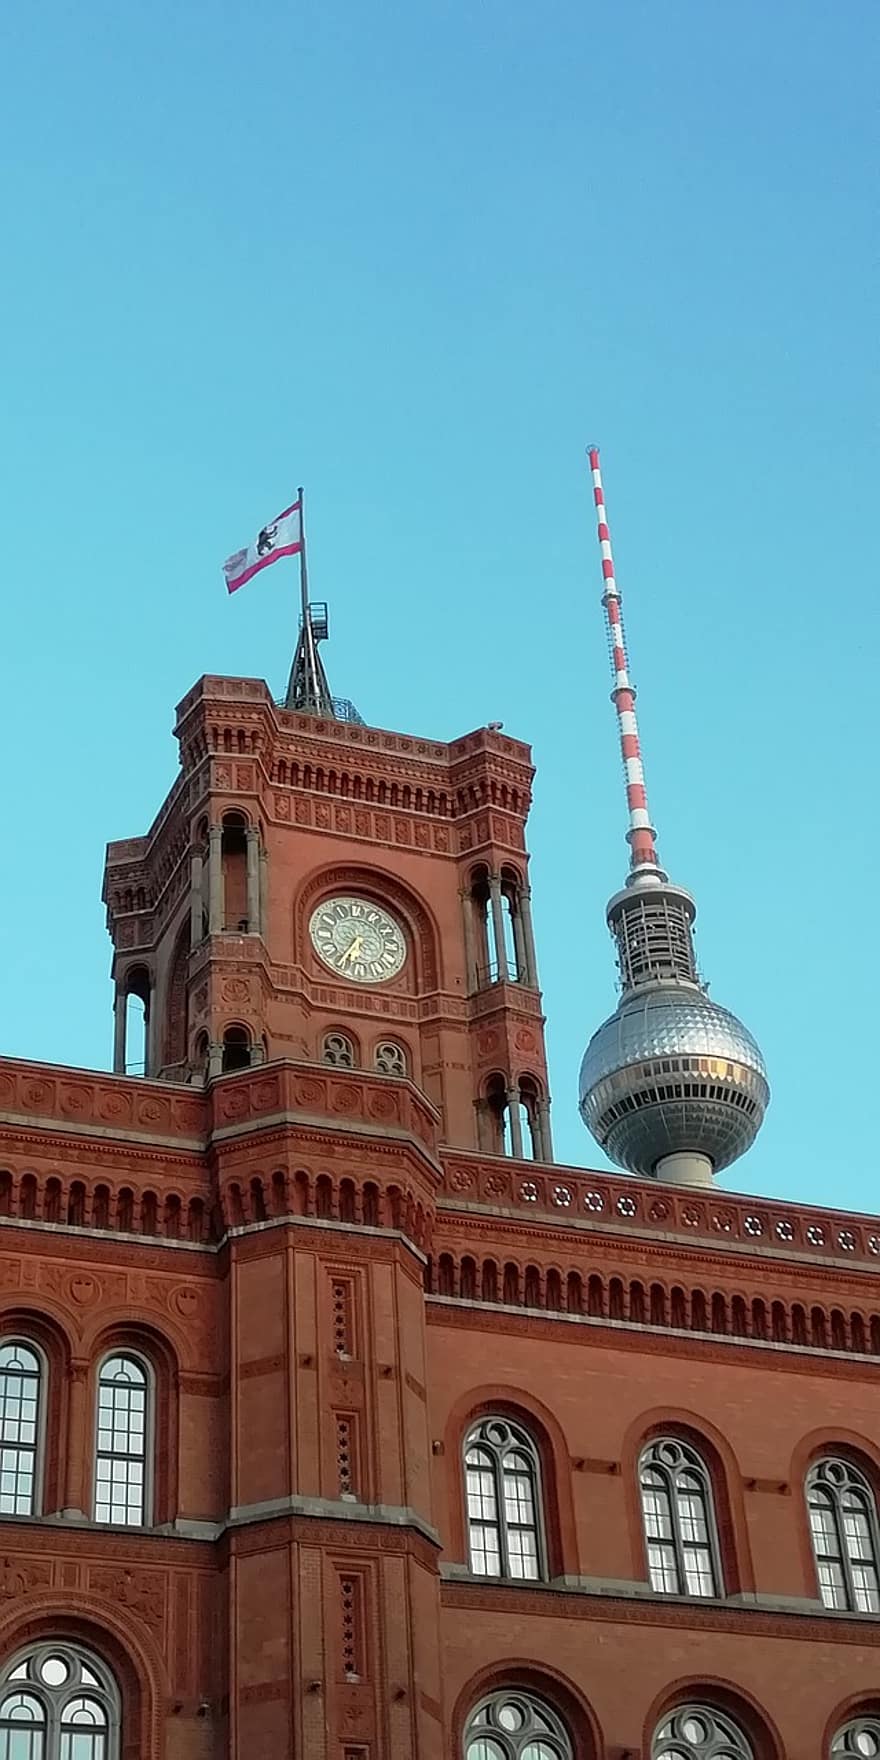 بناء ، هندسة معمارية ، برج الساعة ، قاعة المدينه ، برلين ، قاعة المدينة الحمراء ، برج تلفزيون